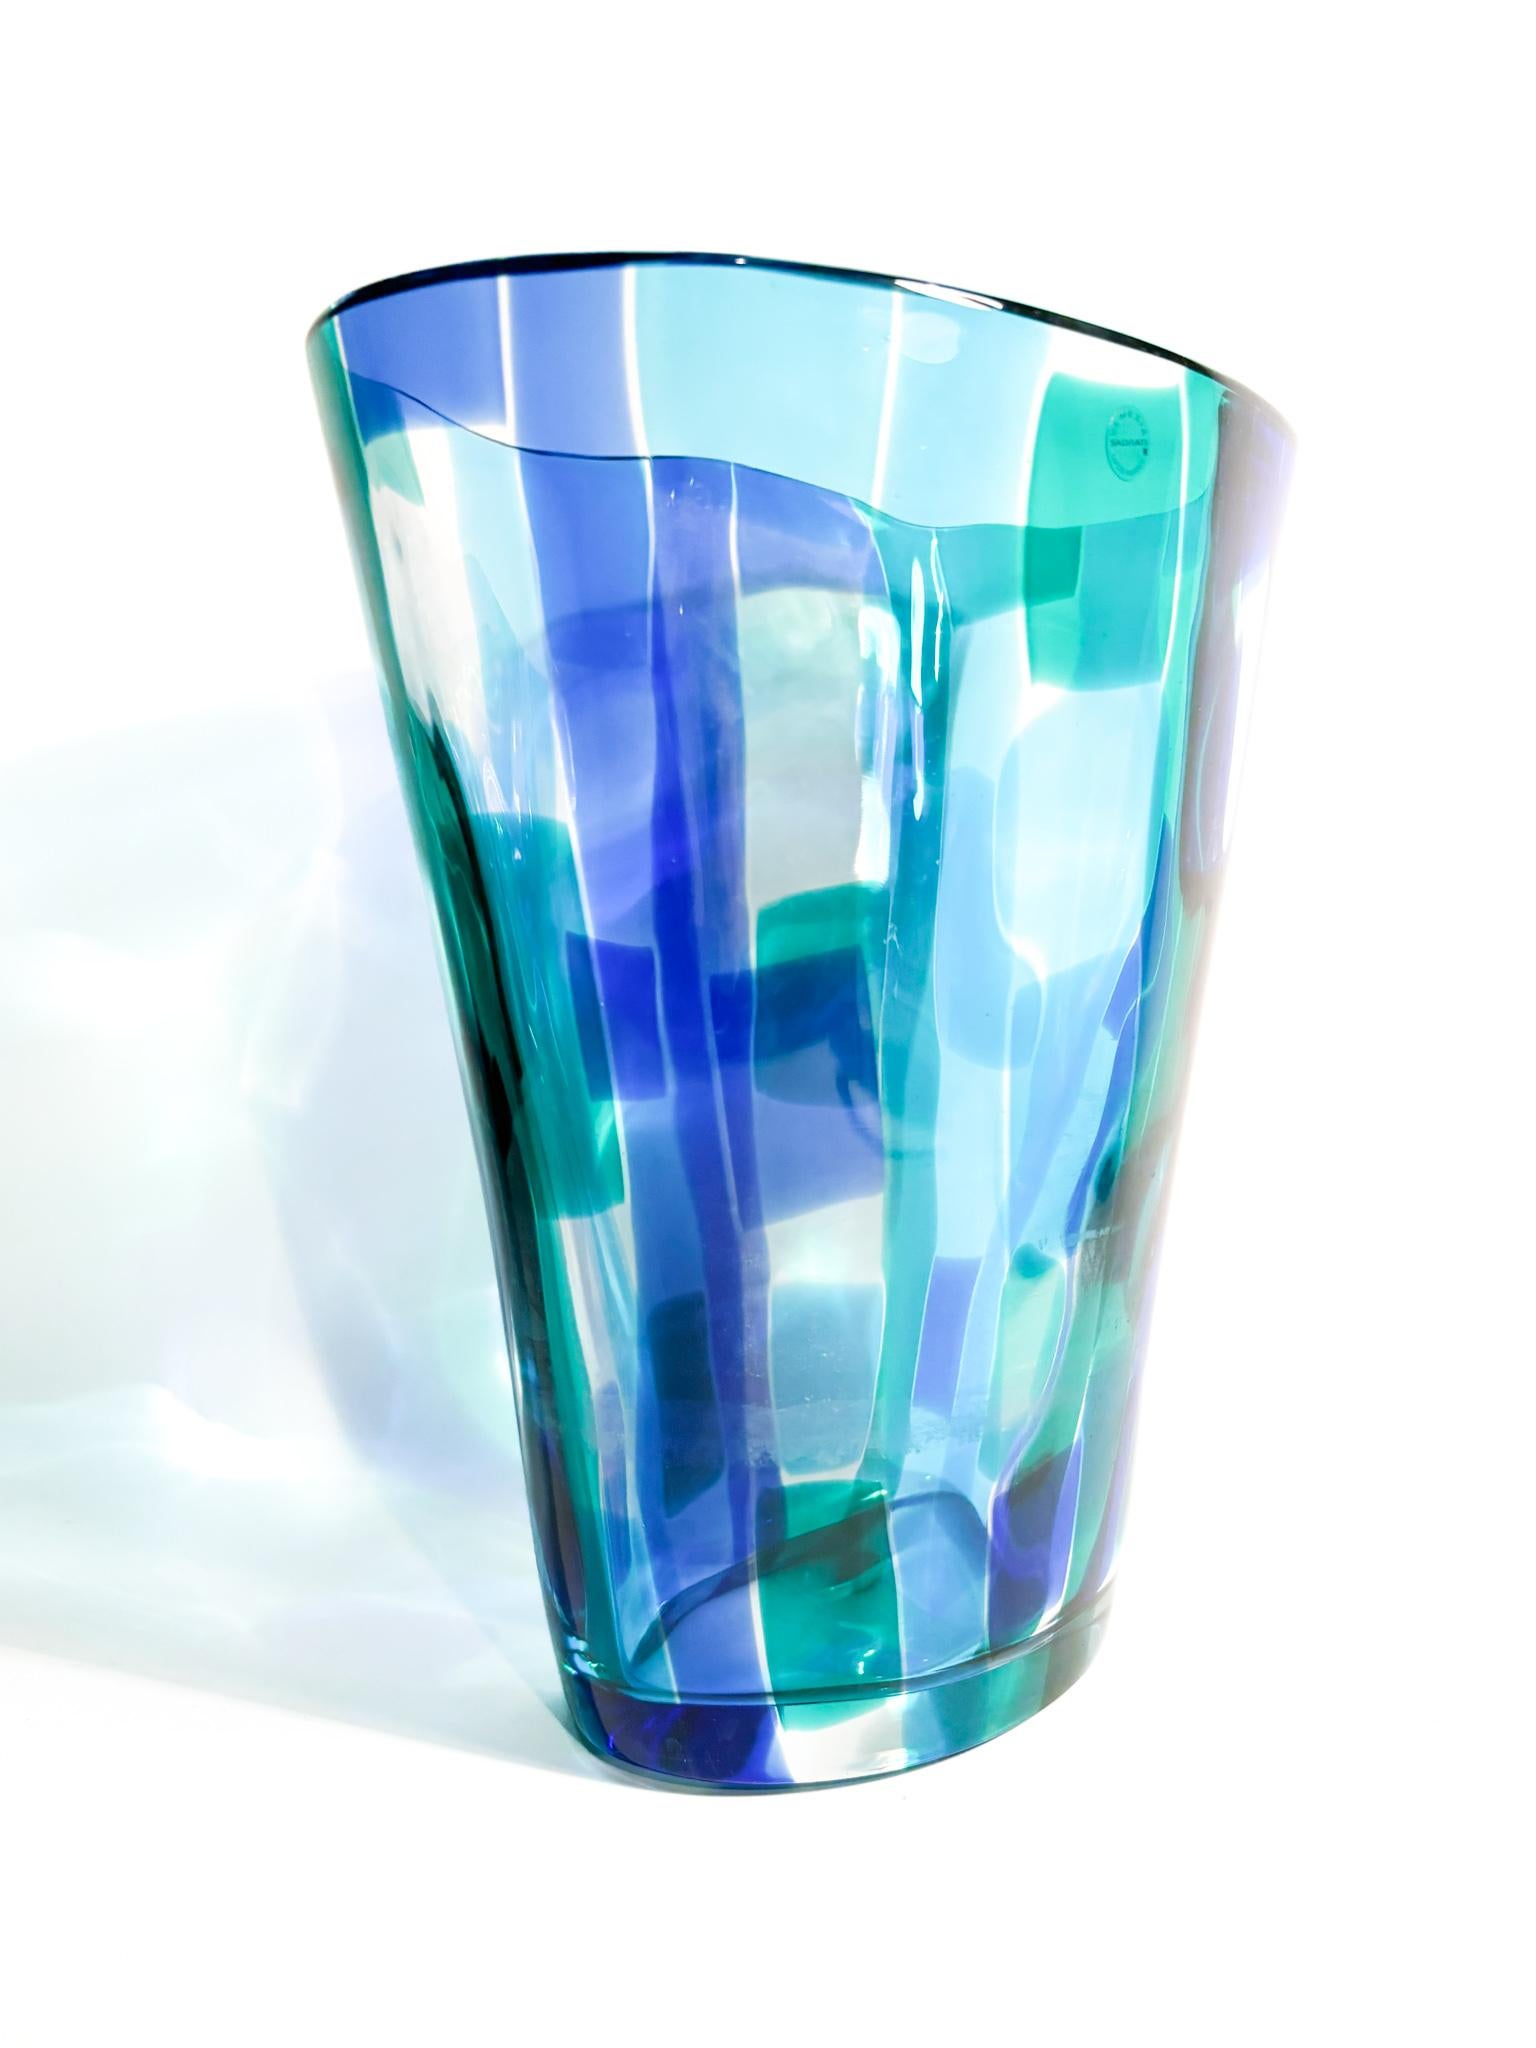 Salviati Murano Multicolored Glass Vase Madras model 1997 For Sale 3